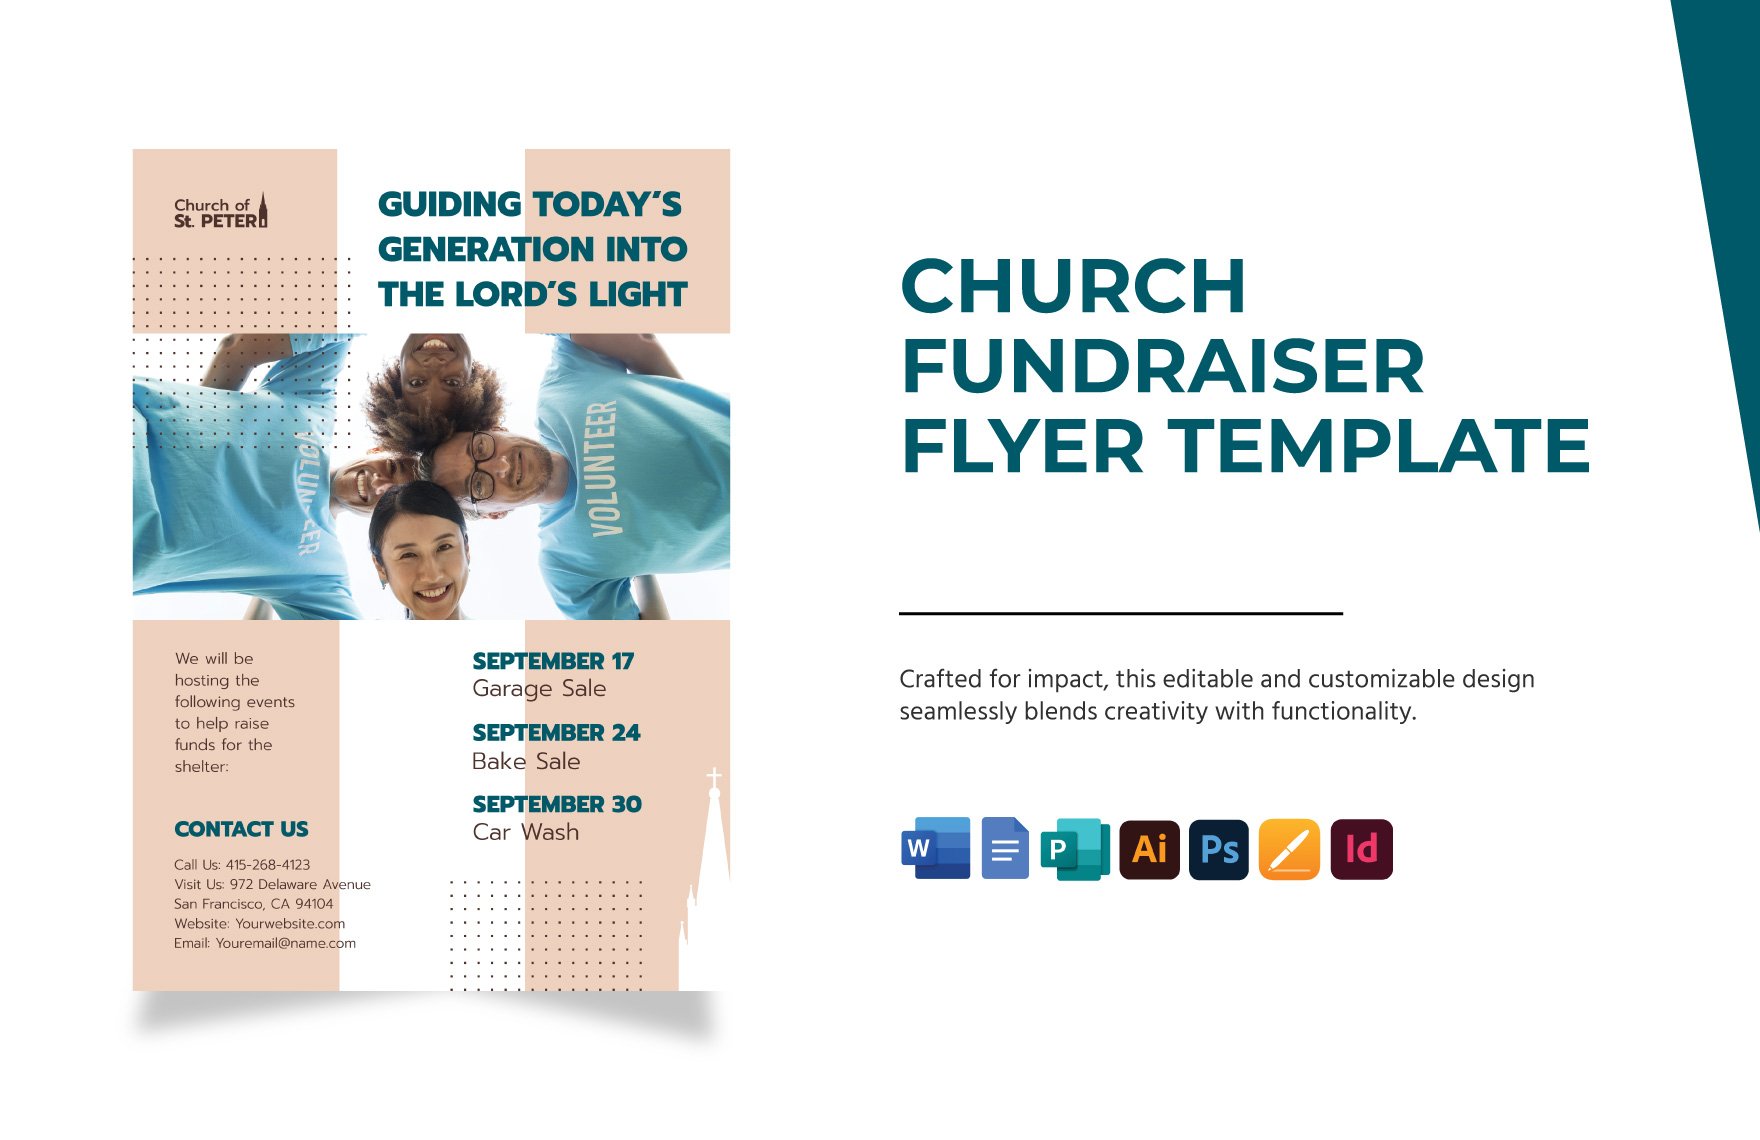 Church Fundraiser Flyer Template